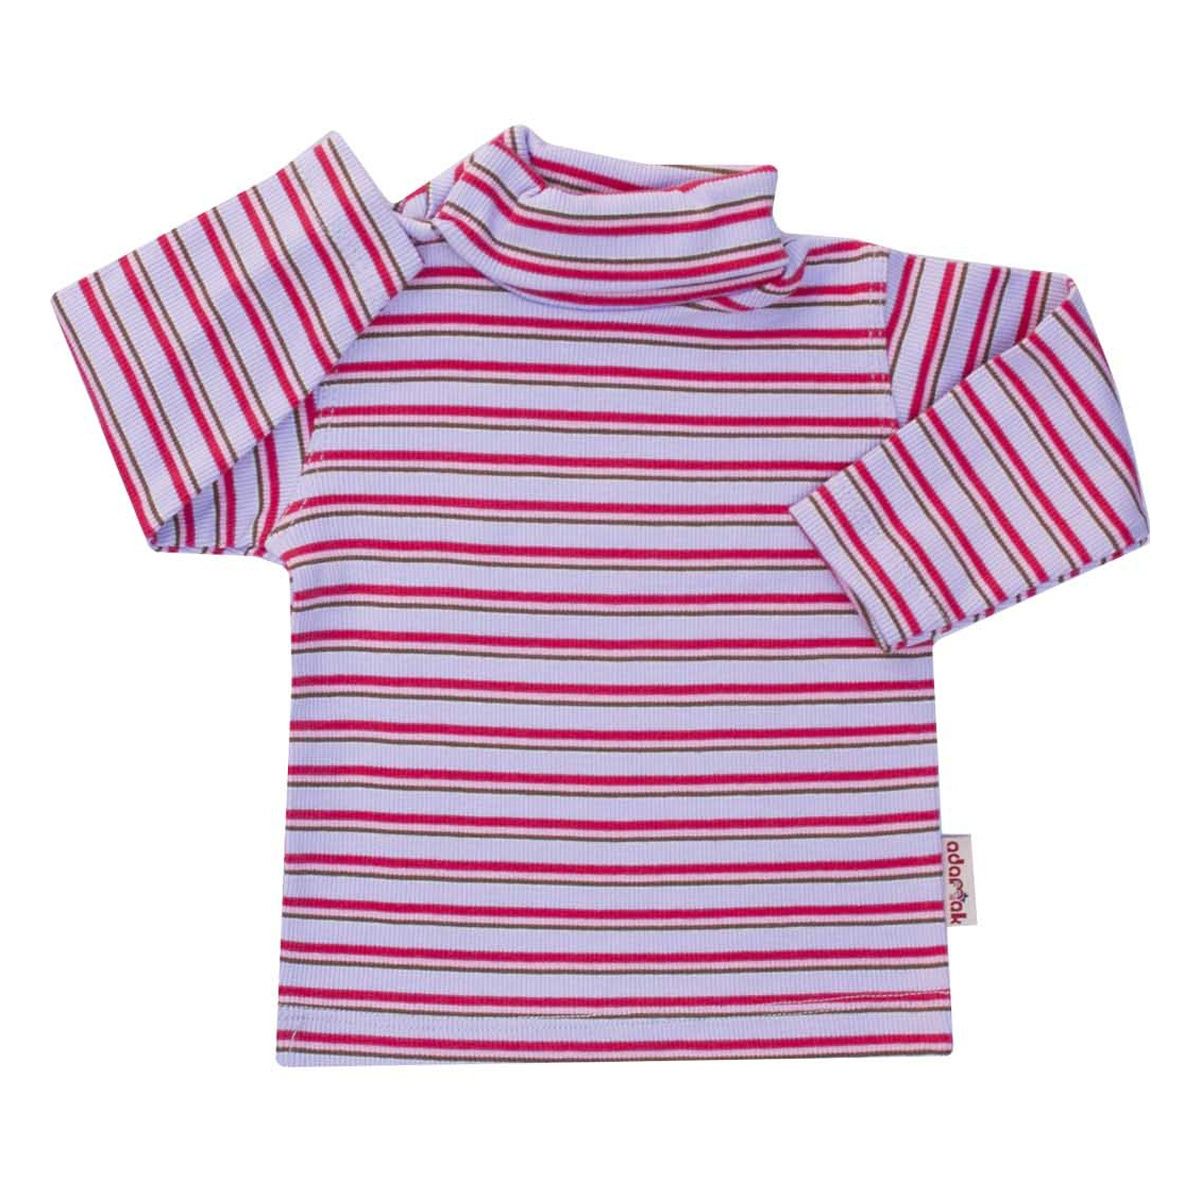 تی شرت آستین بلند نوزاد آدمک طرح راه راه کد 01-144401 -  - 1